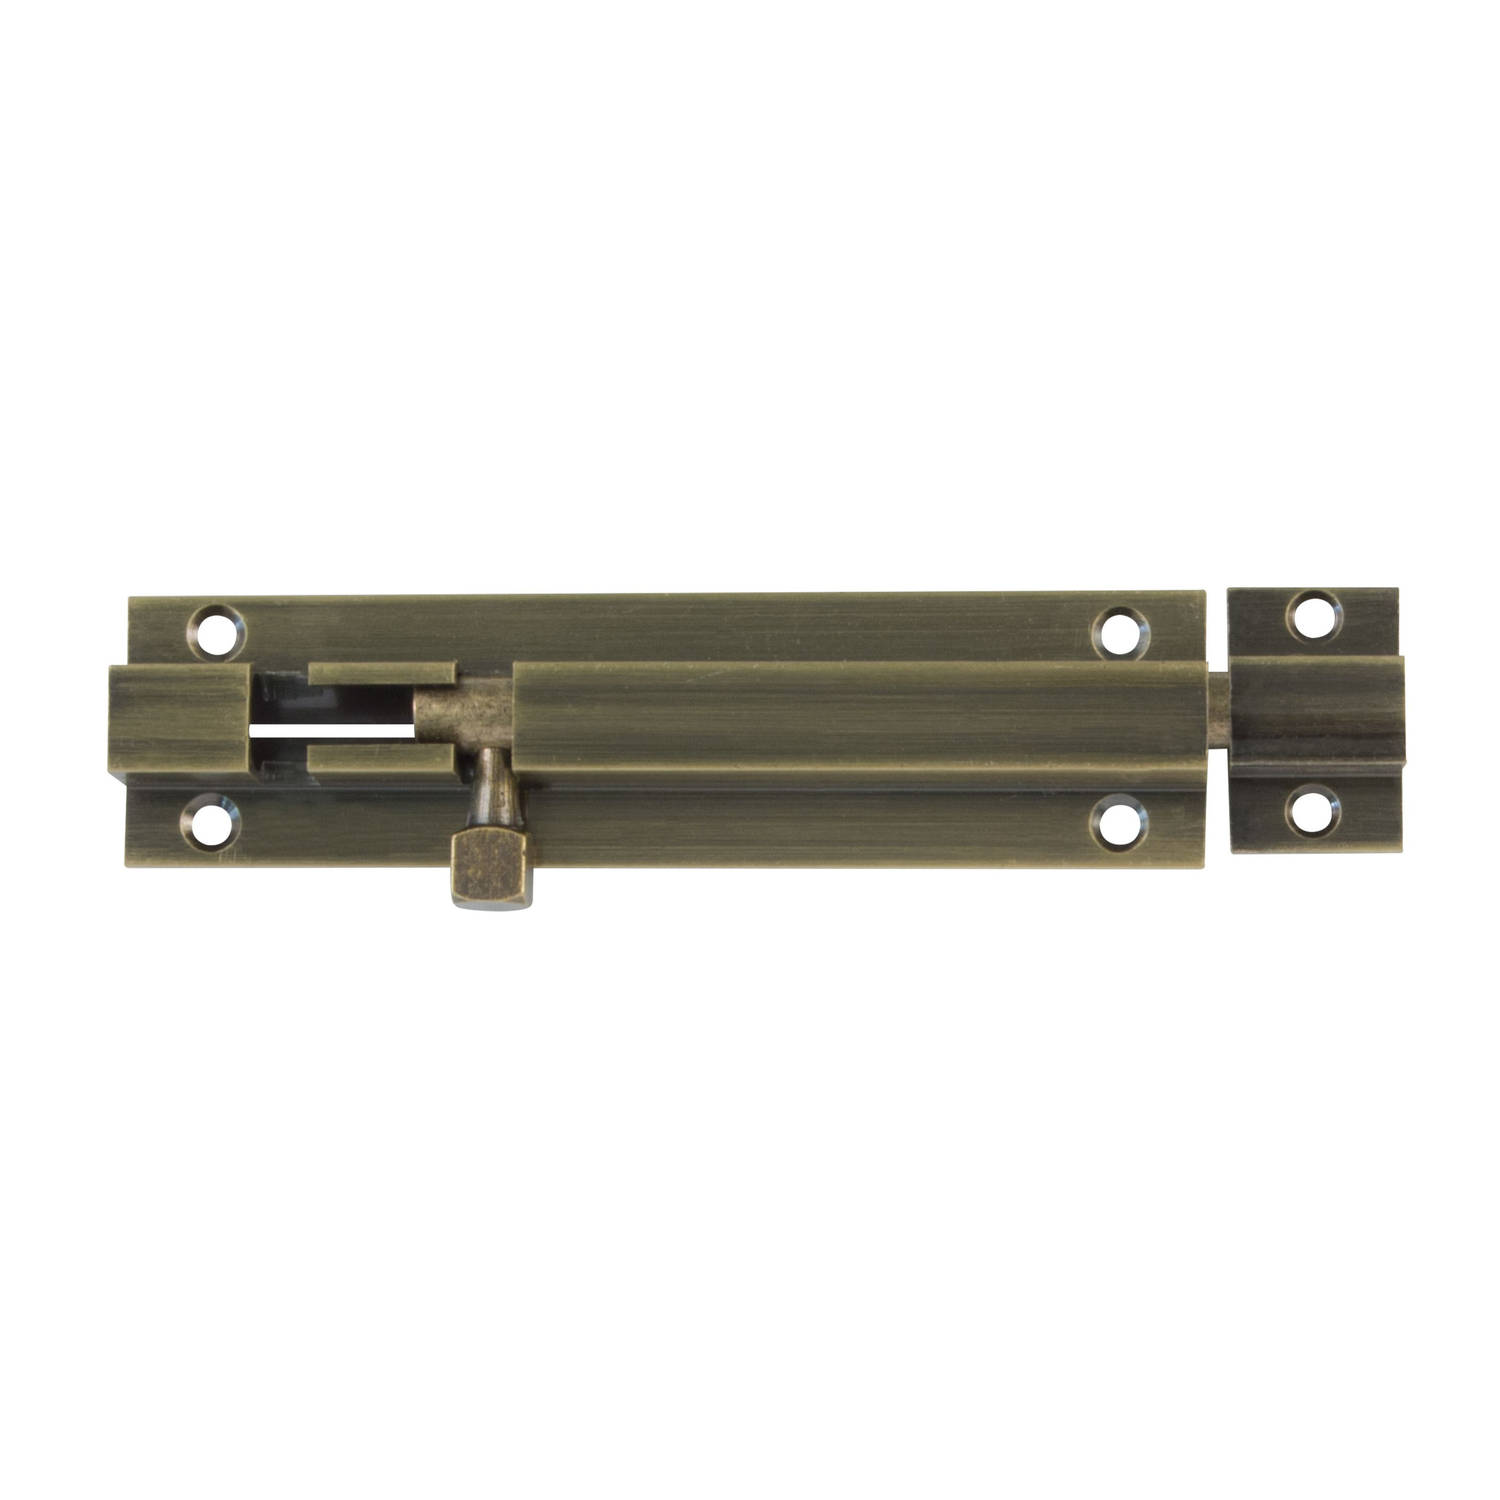 AMIG schuifslot/plaatgrendel - messing - 5 x 2.55 cm - brons - antiek look - deur - poort